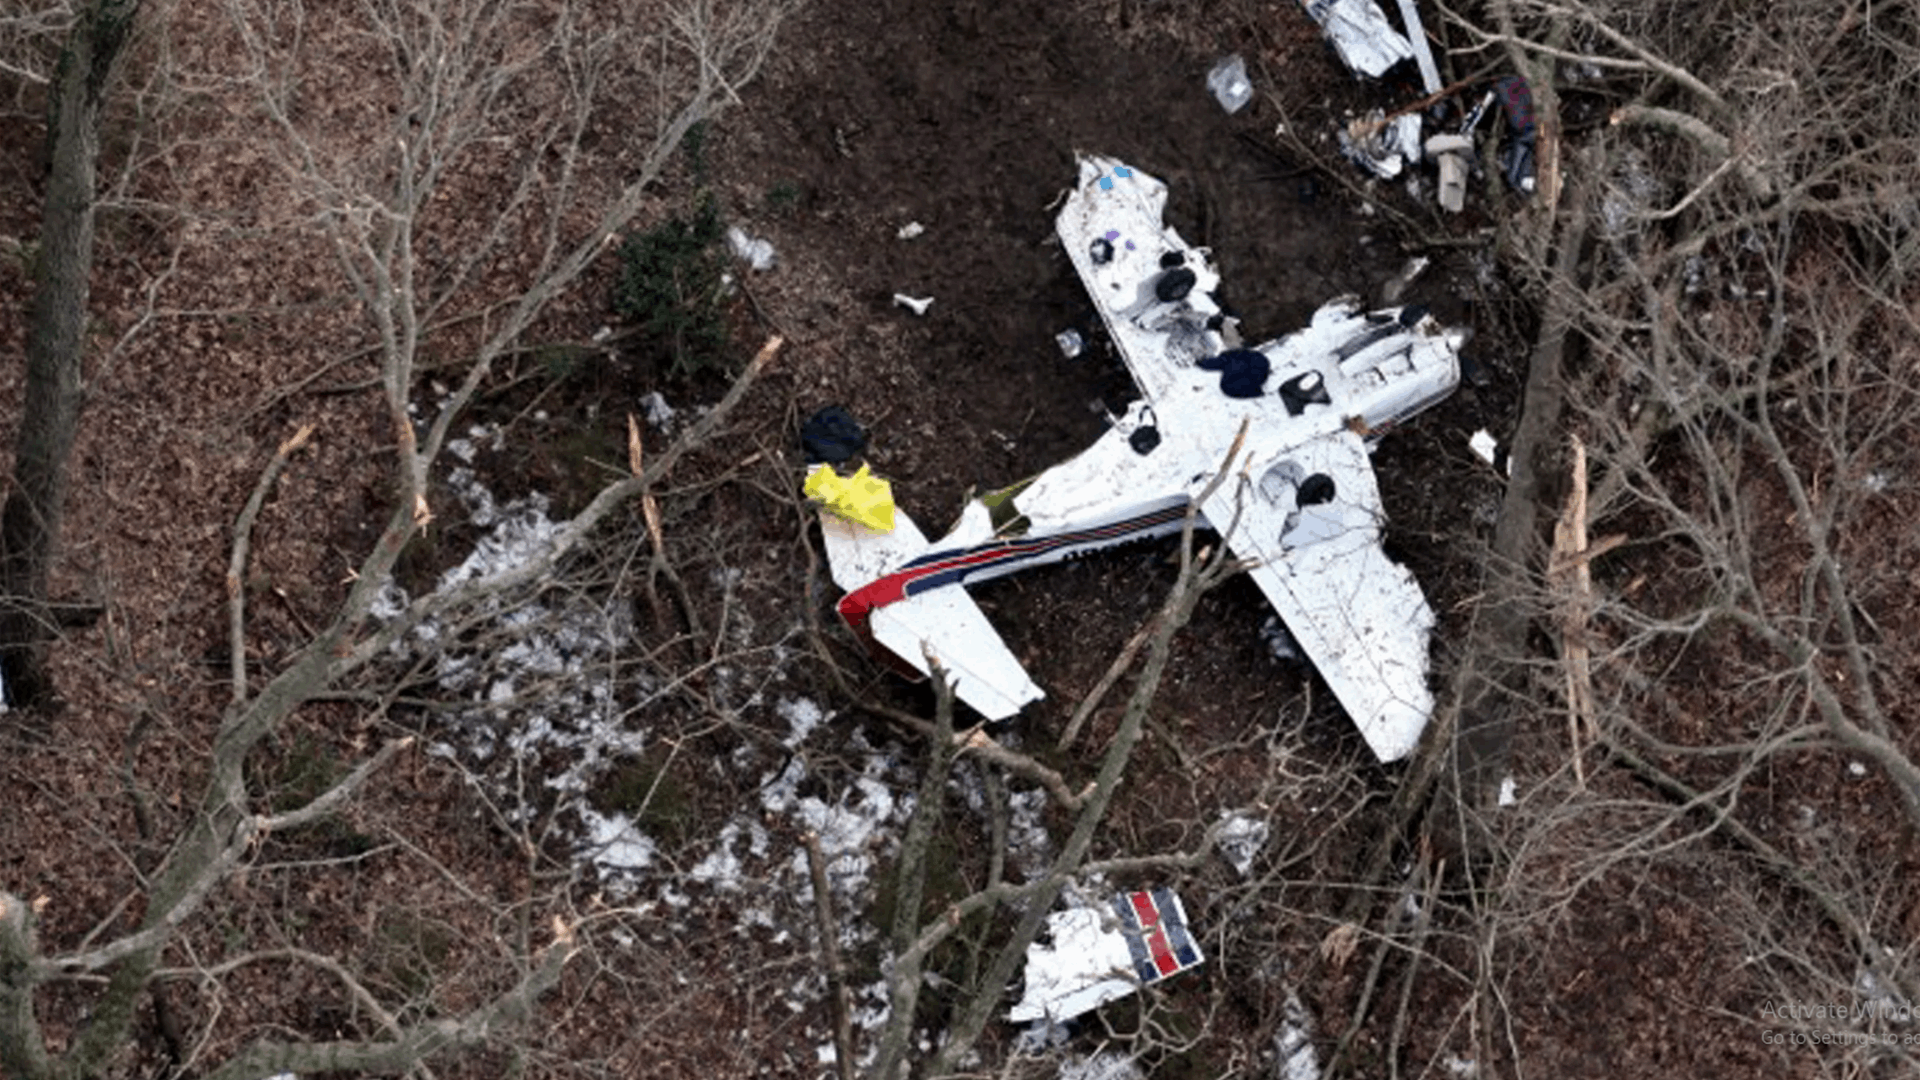 أربعة قتلى في تحطم طائرة خاصة أثار اعتراضها دوي انفجار صوتي في واشنطن